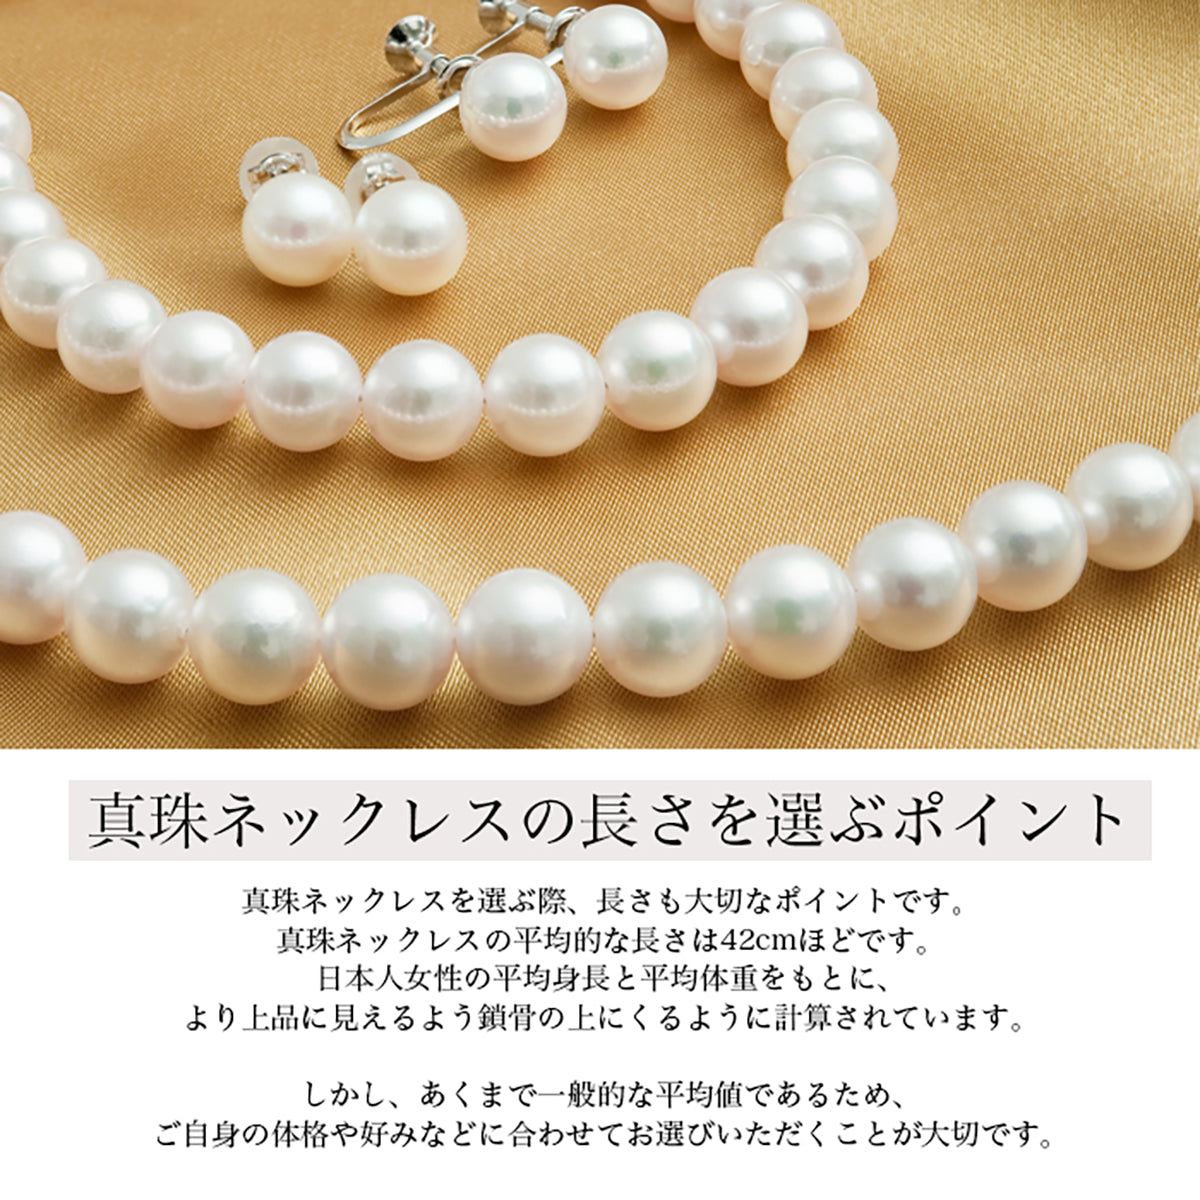 [自然白] [花珠珍珠] 无色正装项链 2 件套 [7.5-8.0 毫米]（耳环/耳钉）Akoya 珍珠正品证书，带收纳盒，适合仪式场合